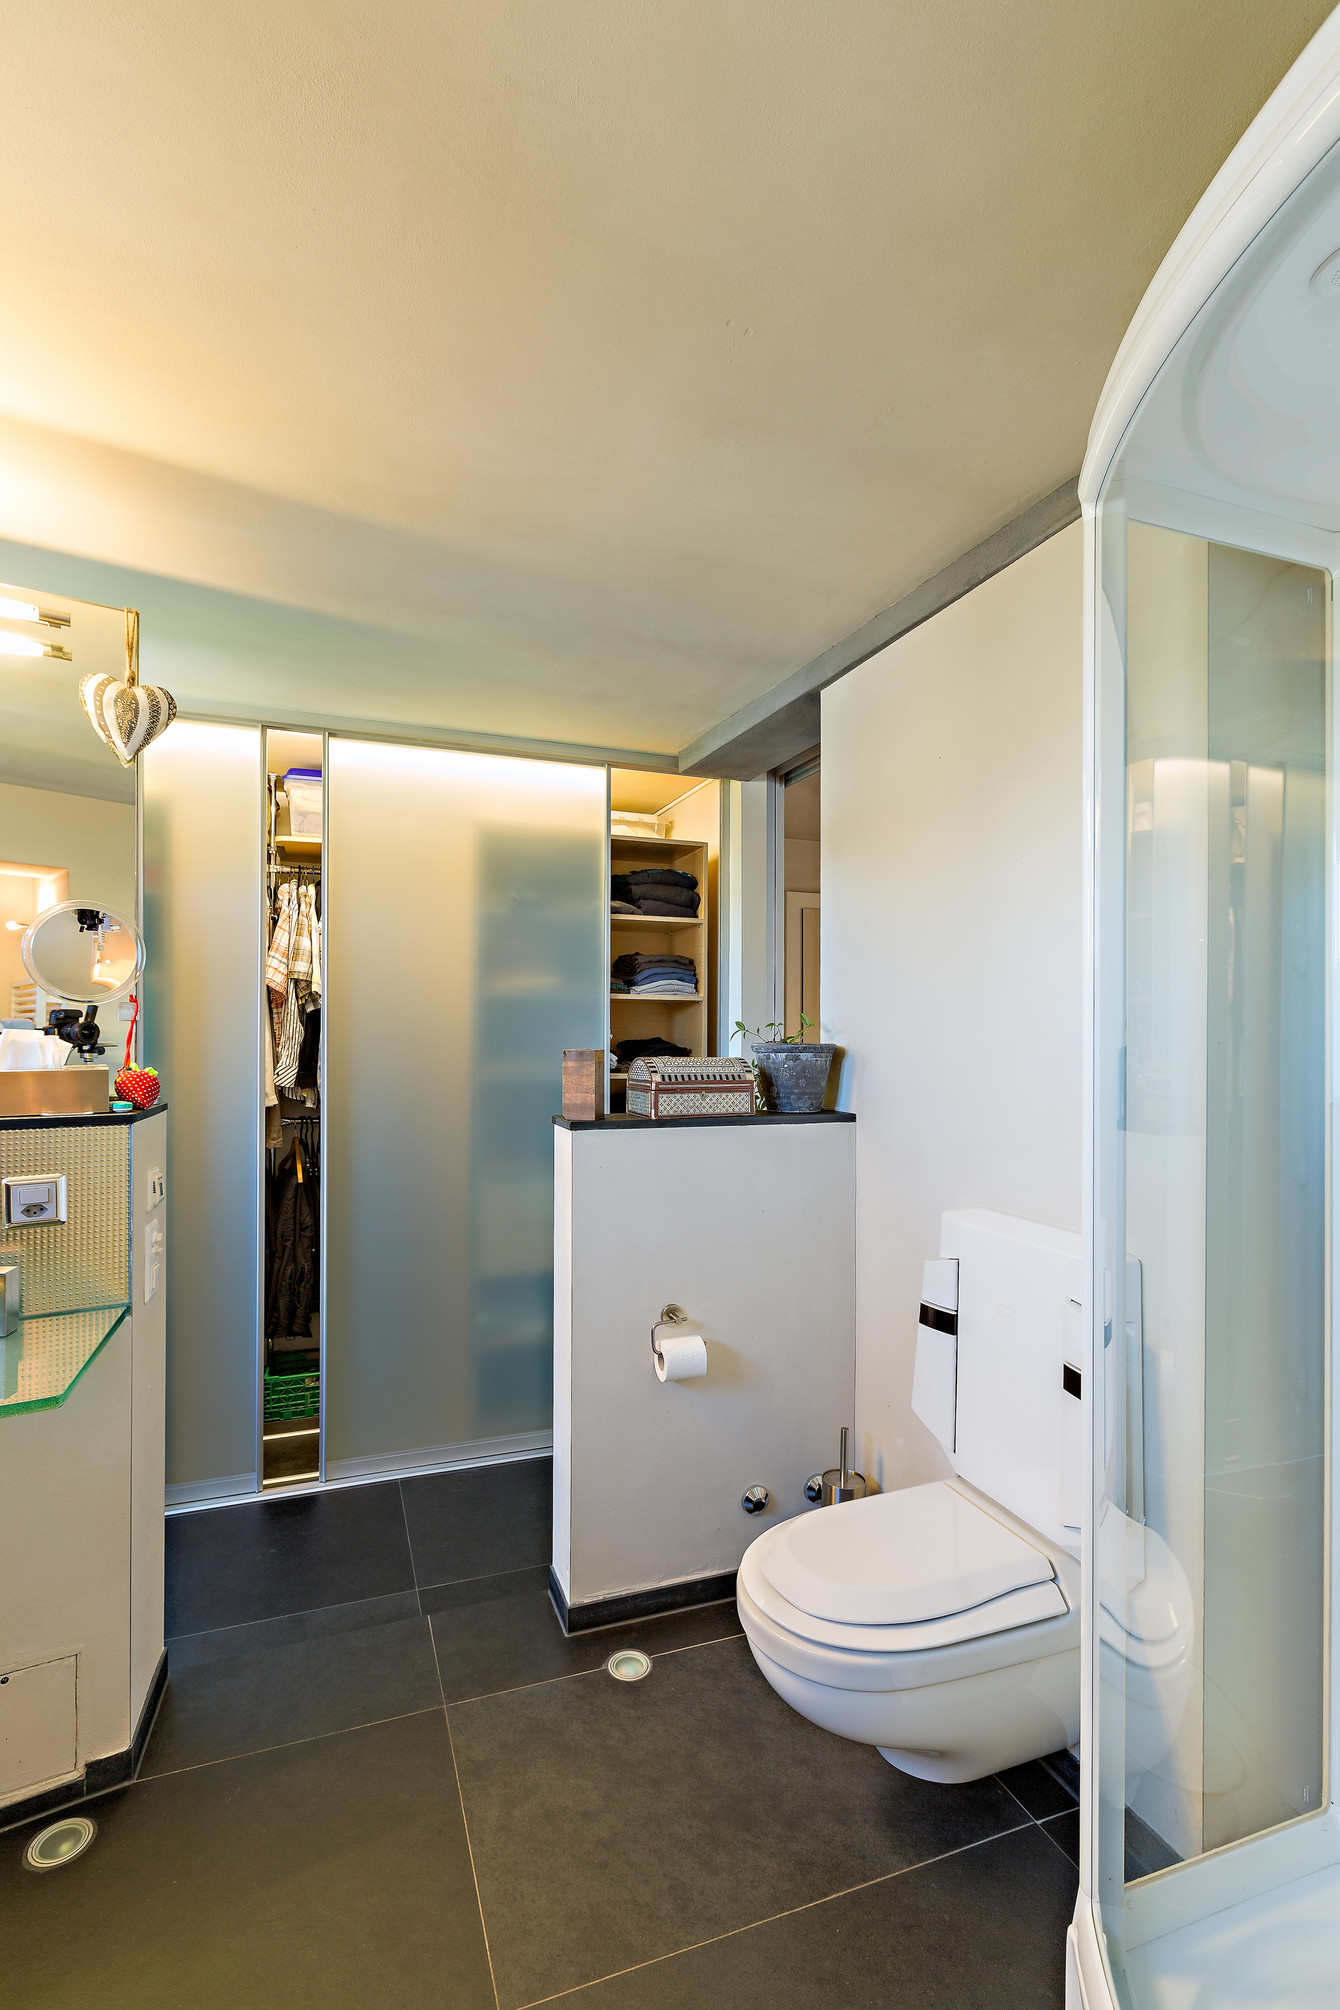 Viel Stauraum bietet ein Schiebetürschrank im Badezimmer, hier als Kleiderschrank konzipiert